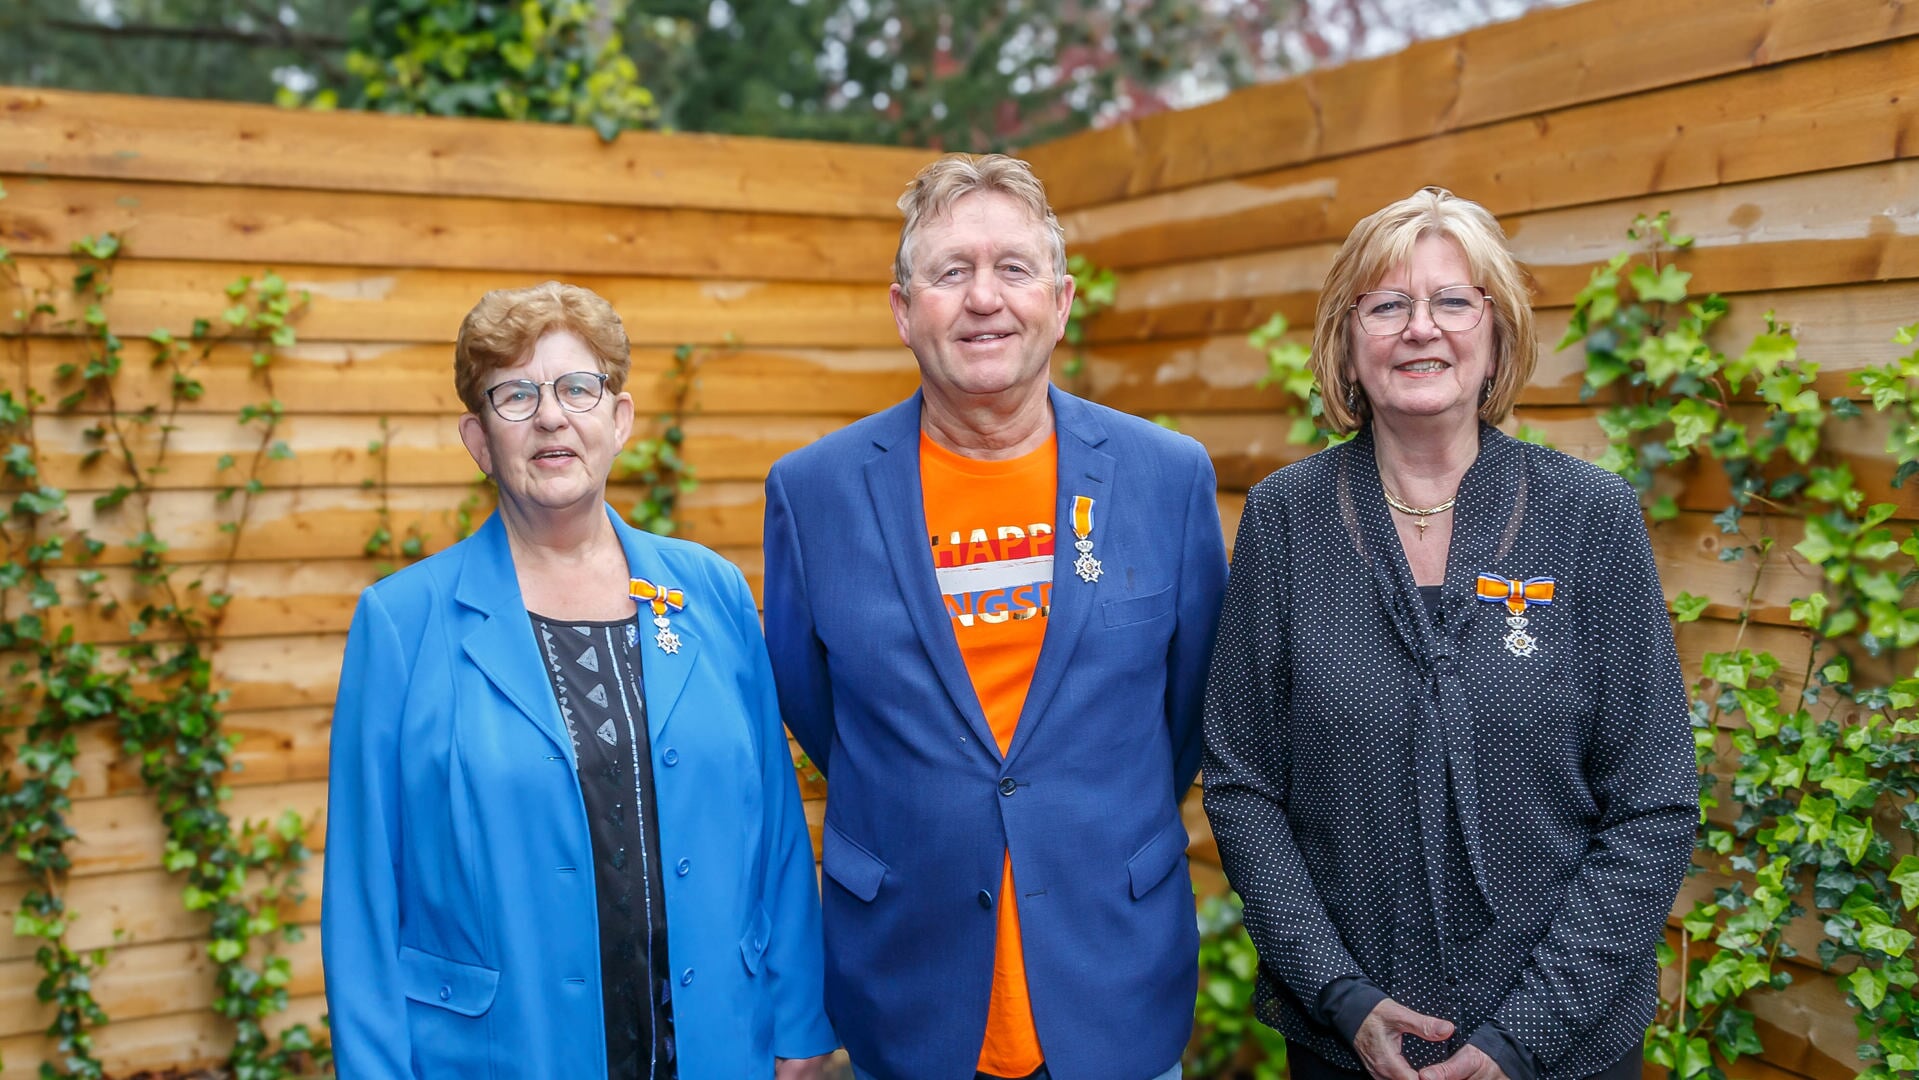 Krijnie van der Sluis, Ton de Groot en Fanny Zuur zijn op Koningsdag benoemd tot Lid in de Orde van Oranje Nassau.